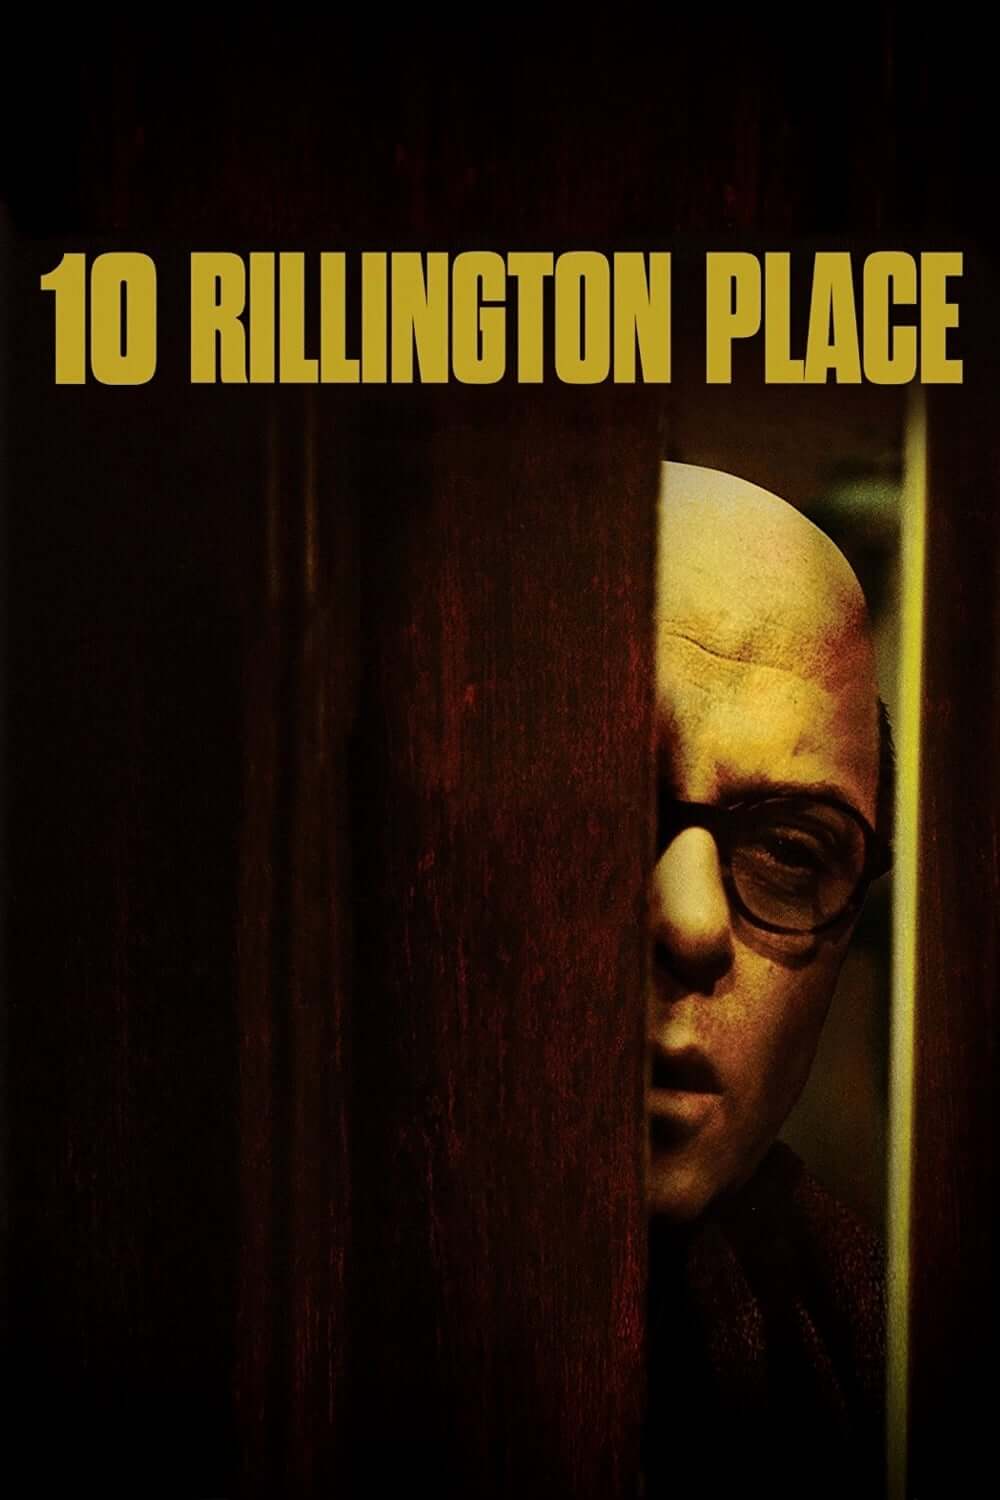 شماره ۱۰ محله ریلینگتون (10 Rillington Place)